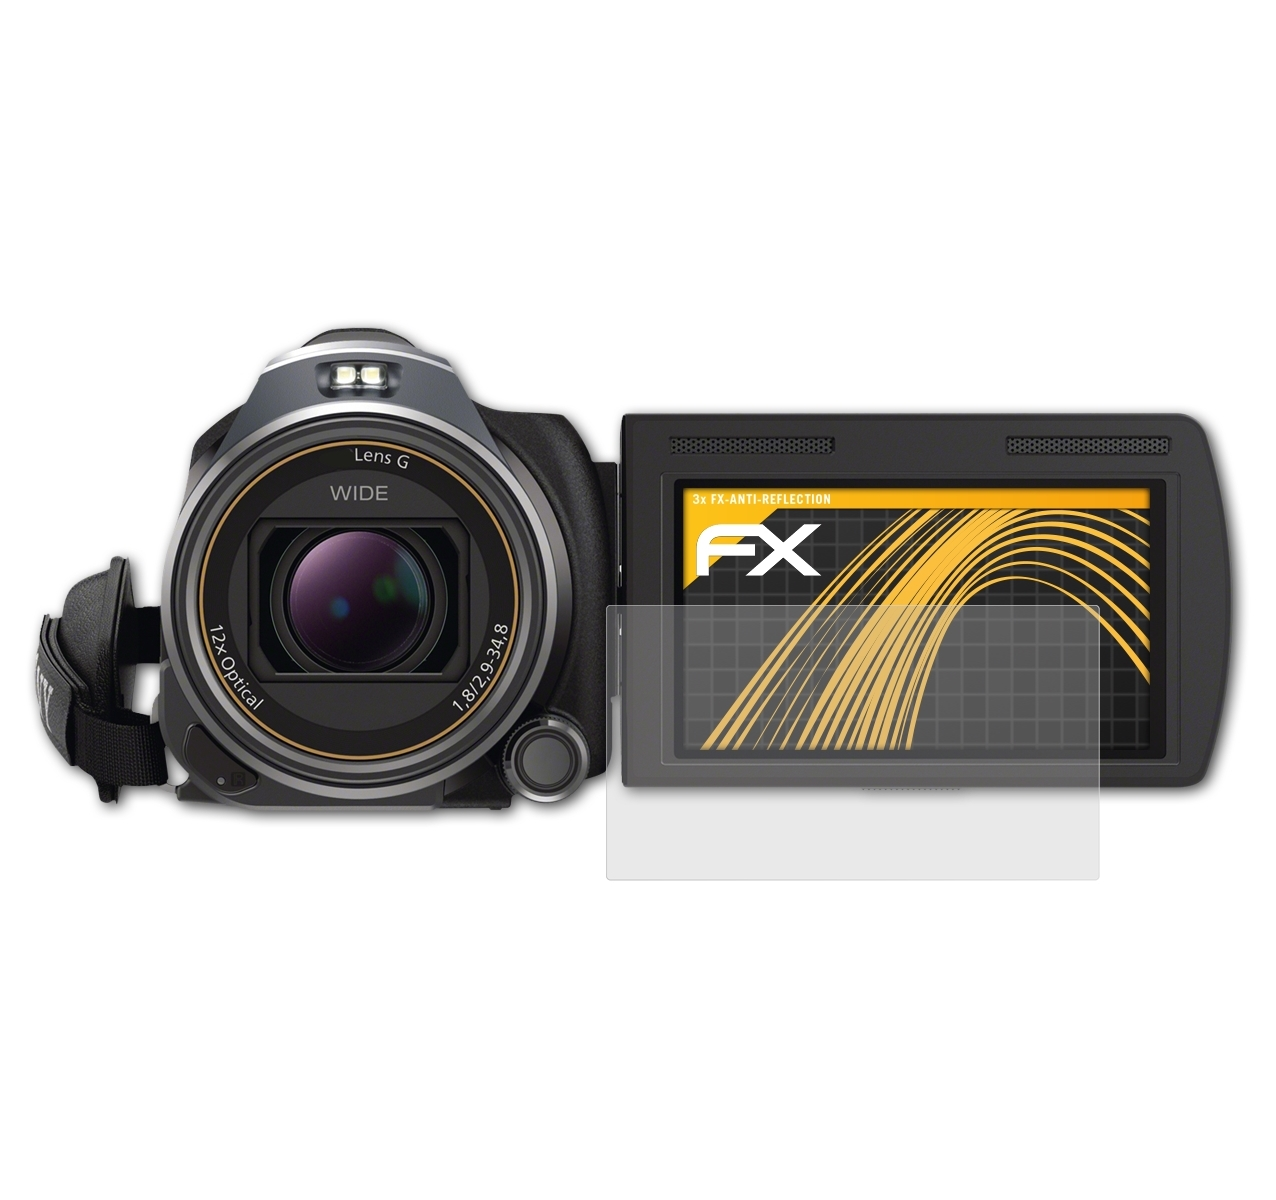 ATFOLIX 3x FX-Antireflex Displayschutz(für HDR-PJ650VE) Sony